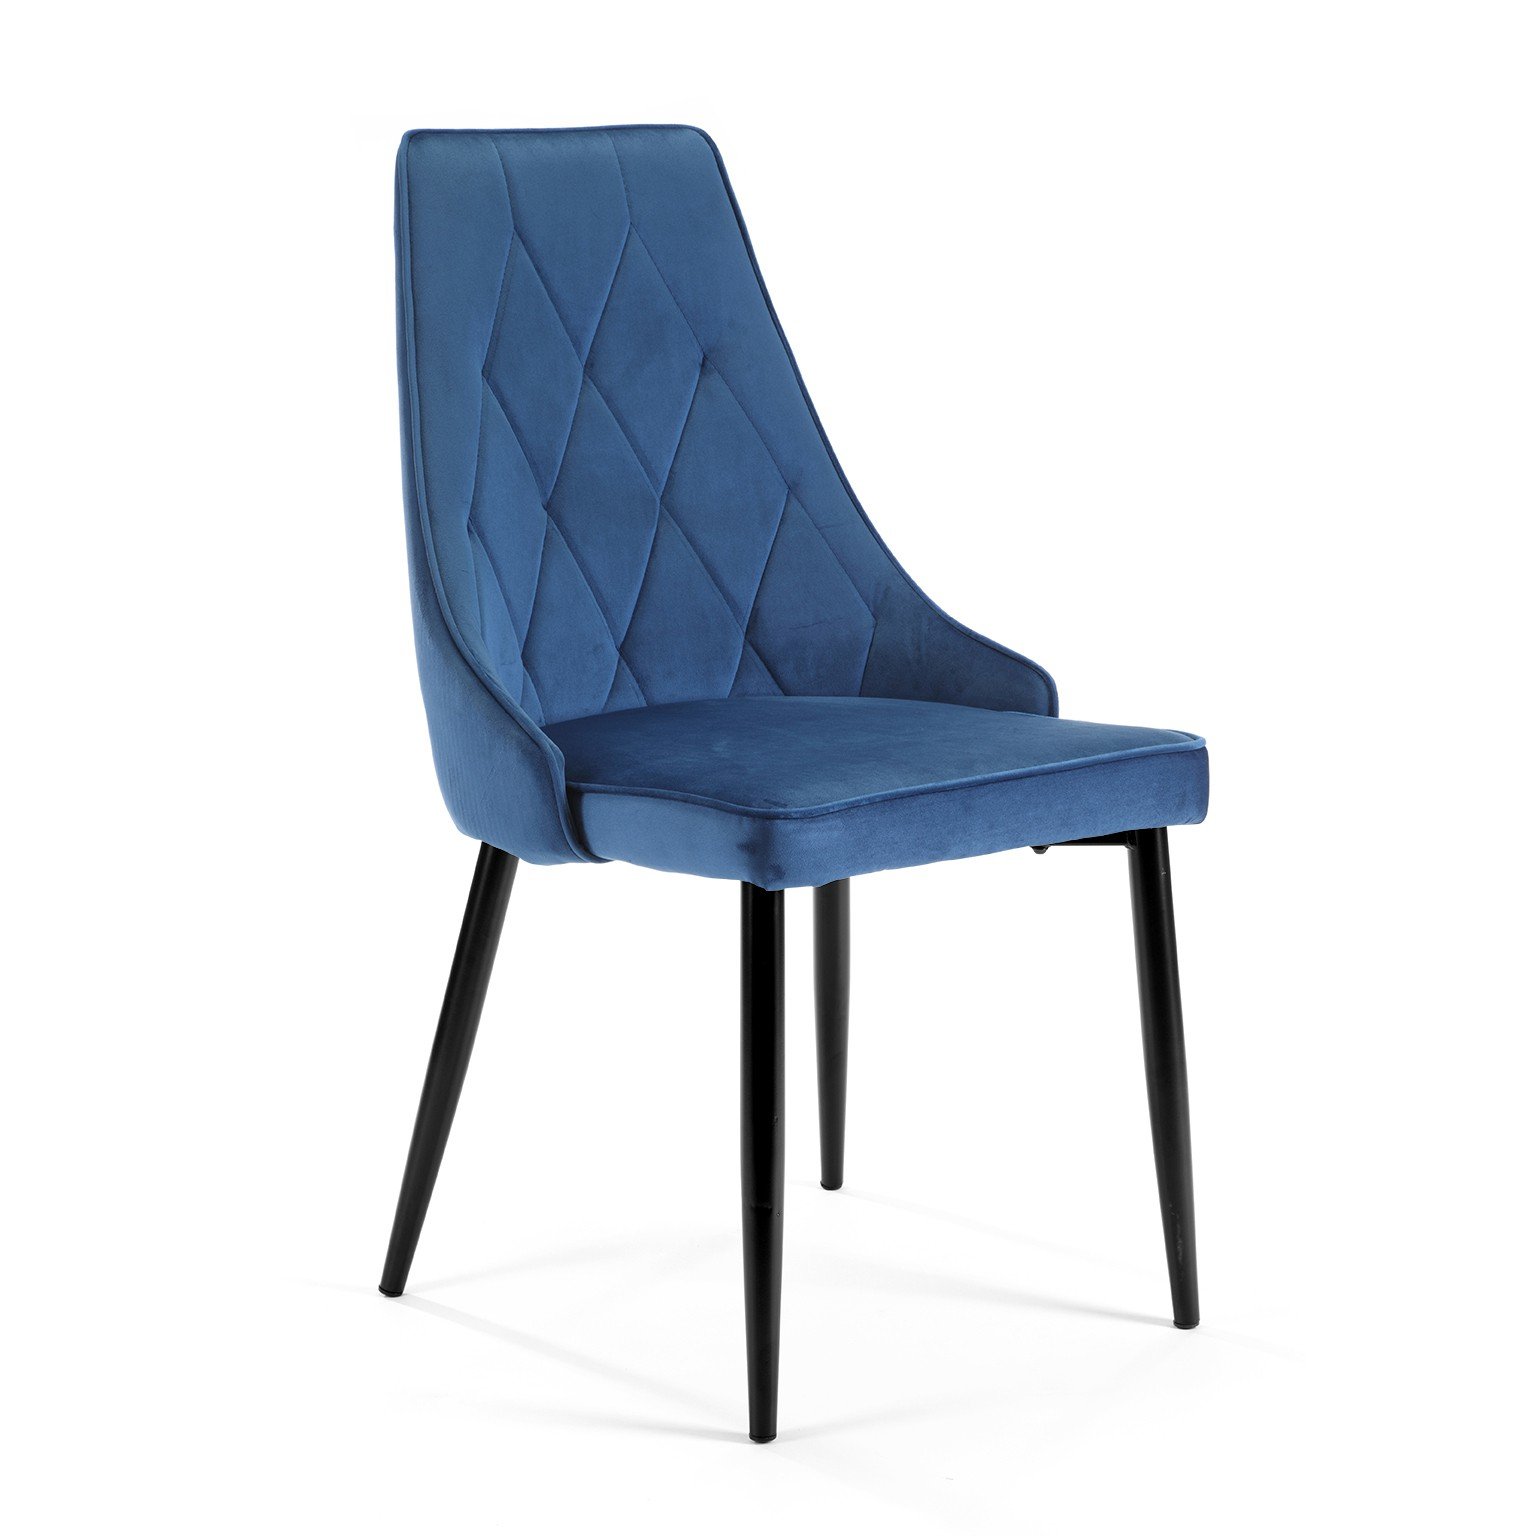 4-rių kėdžių komplektas SJ.054, tamsiai mėlynas - 1